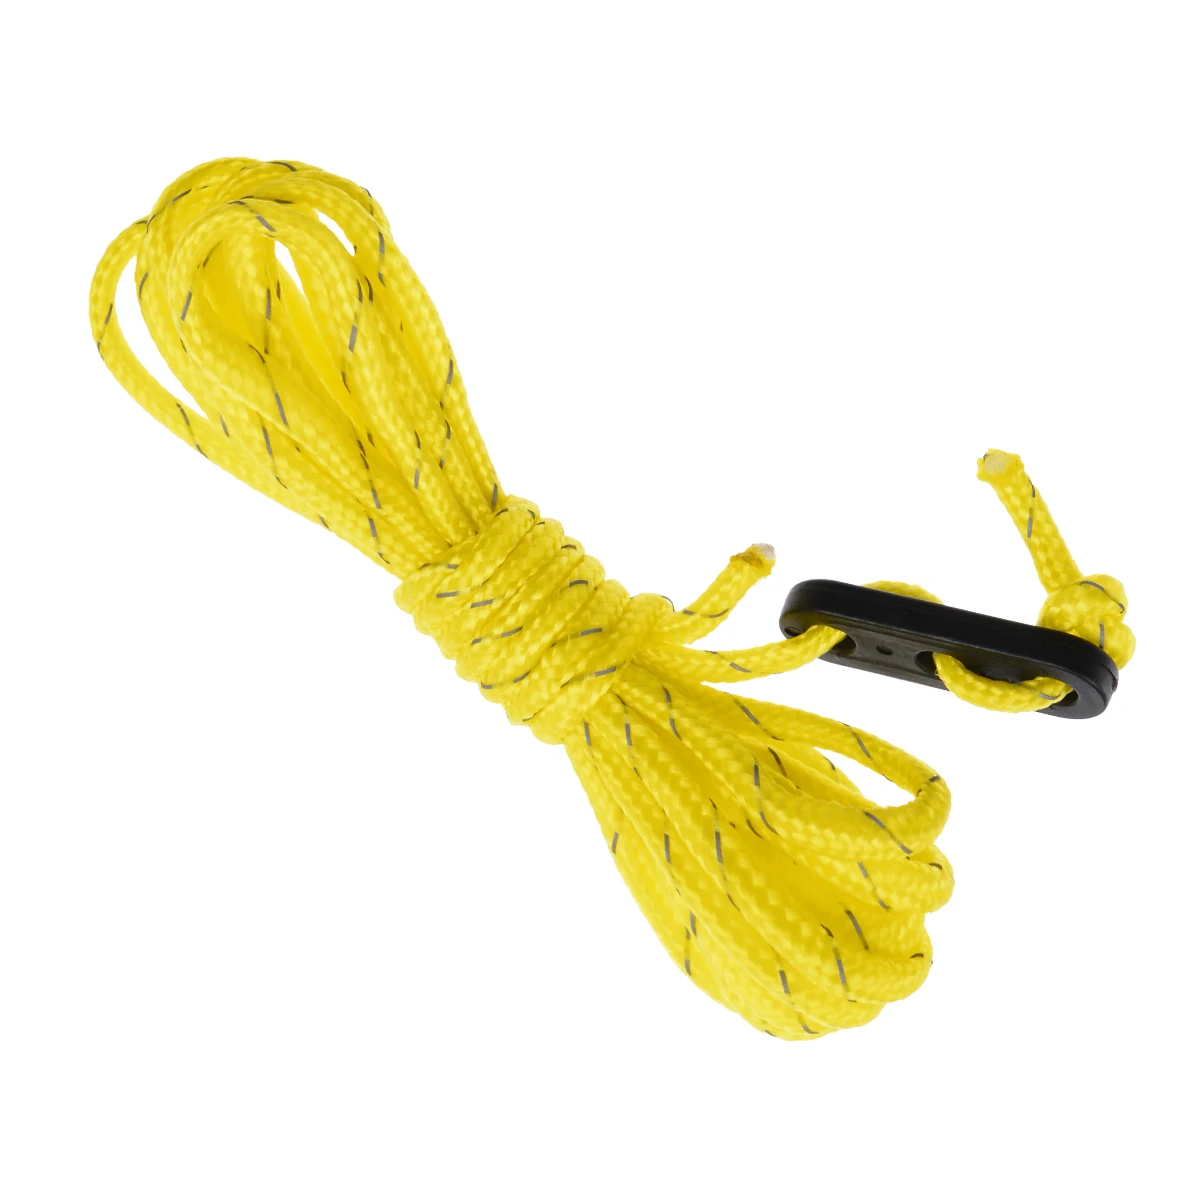 4 шт. флуоресцентный желтый брезентовый тент веревка Guy Line шнур для кемпинга